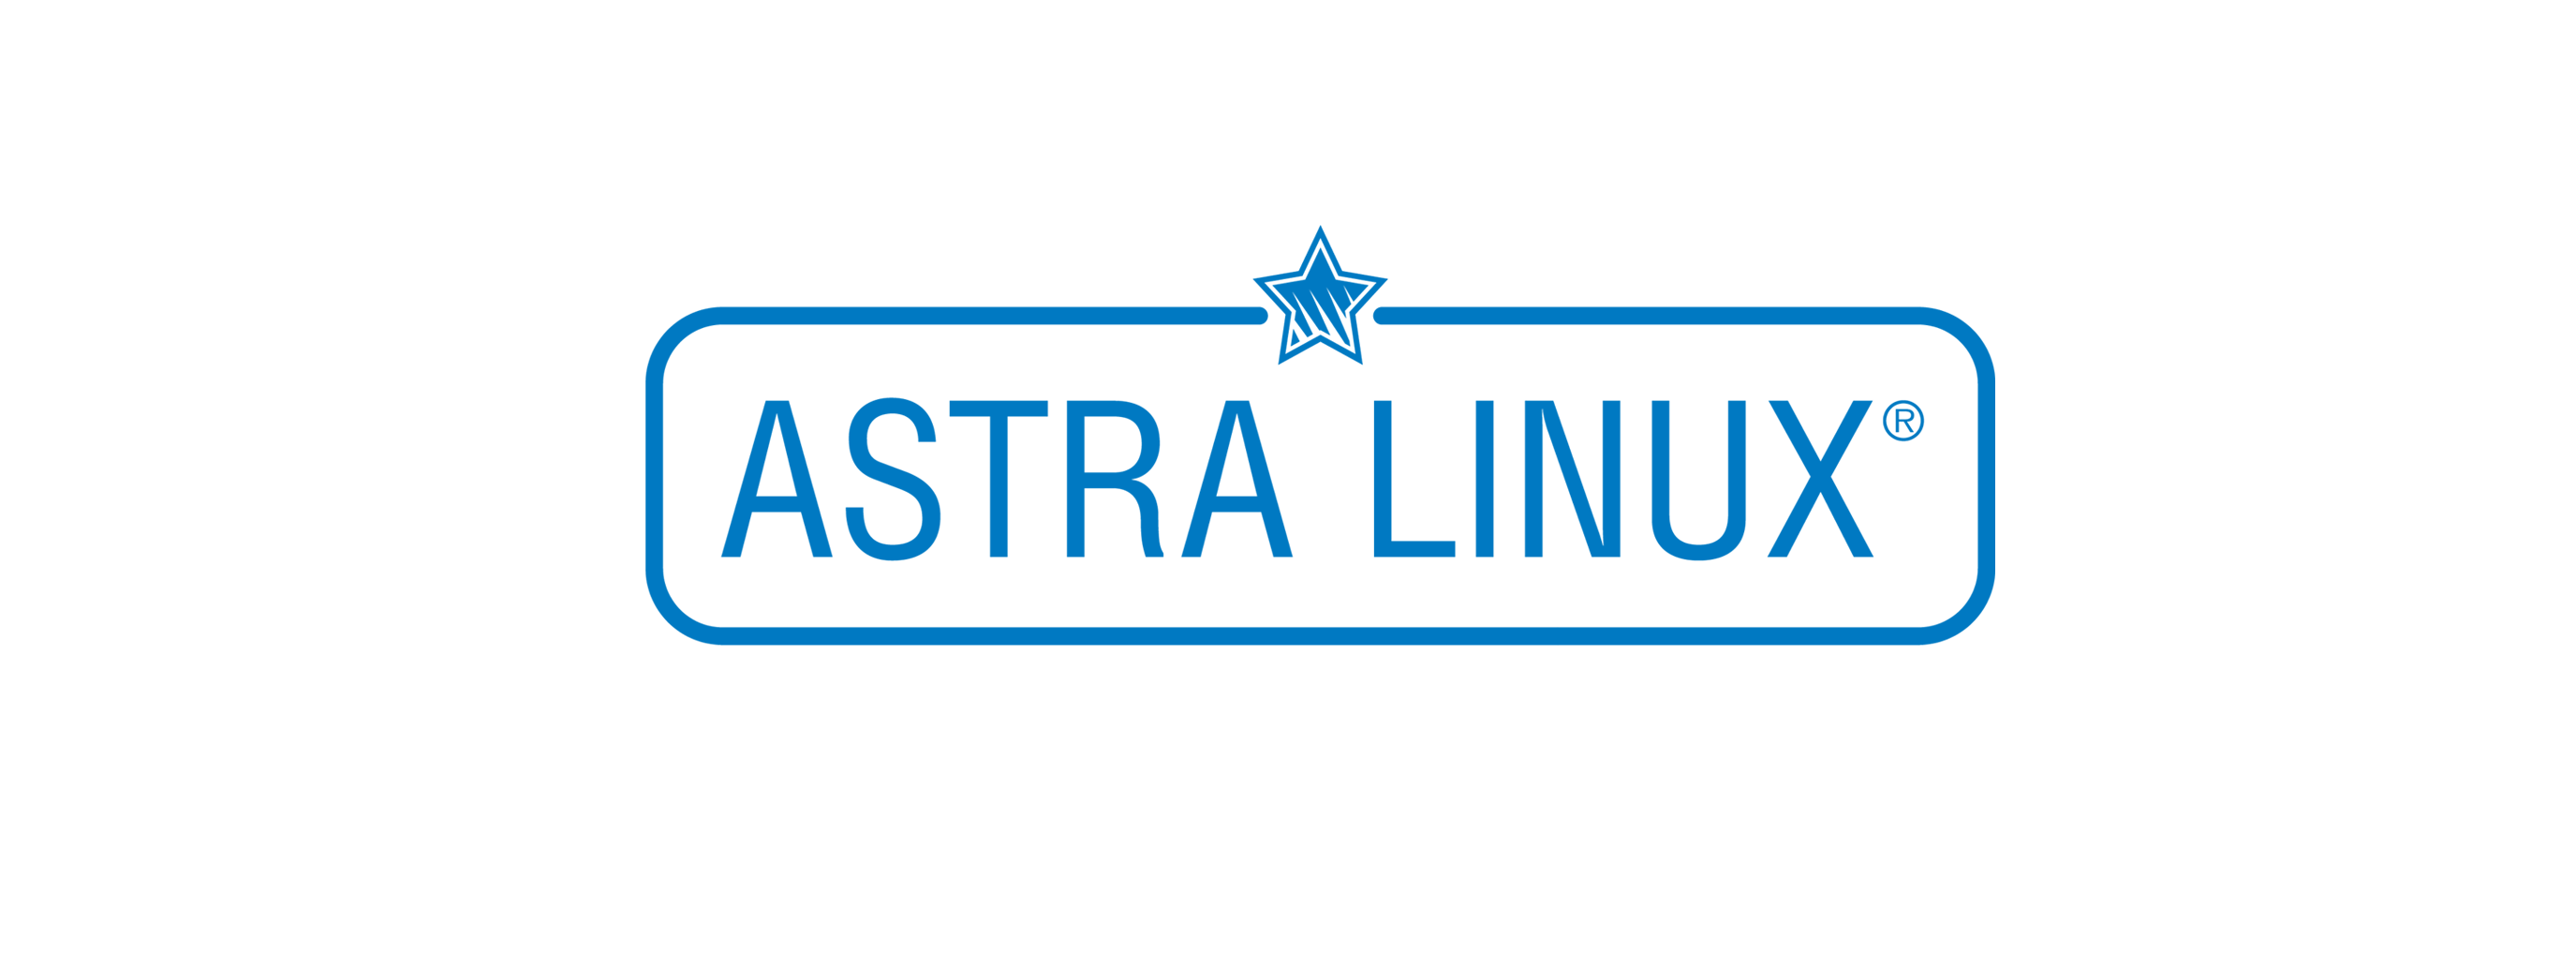 Лицензия РусБИТех Astra Linux Special Edition (очередное обновление 1.7), уровень защищенности Максимальный (Смоленск), РУСБ.10015-01 (МО), Russian, на срок действия исключительного права базовая лицензия для сервера, электронный ключ (OS2102X8617COP000SR